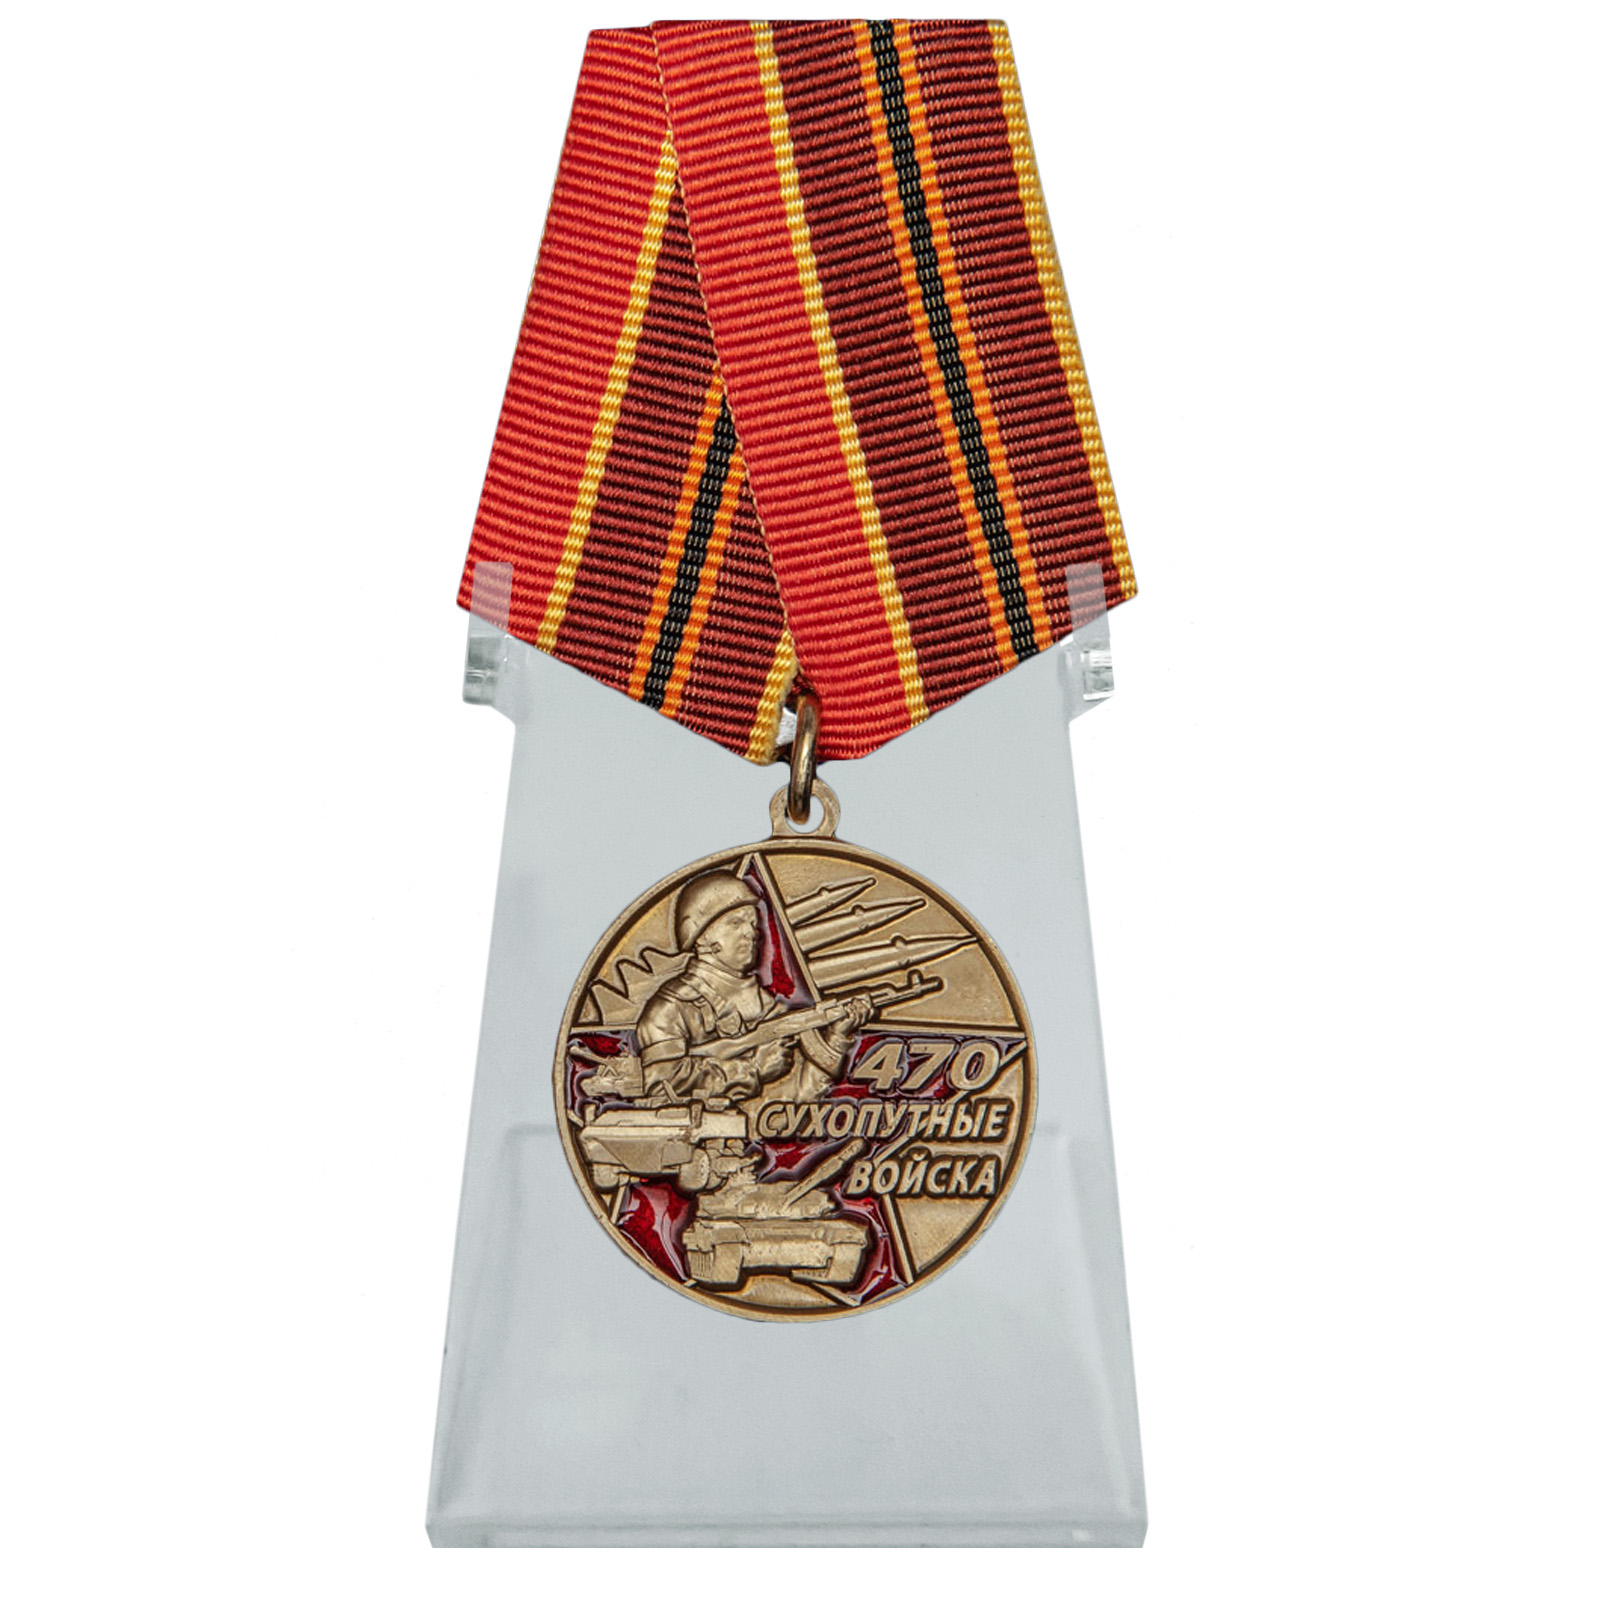 Медаль "470 лет Сухопутным войскам" на подставке